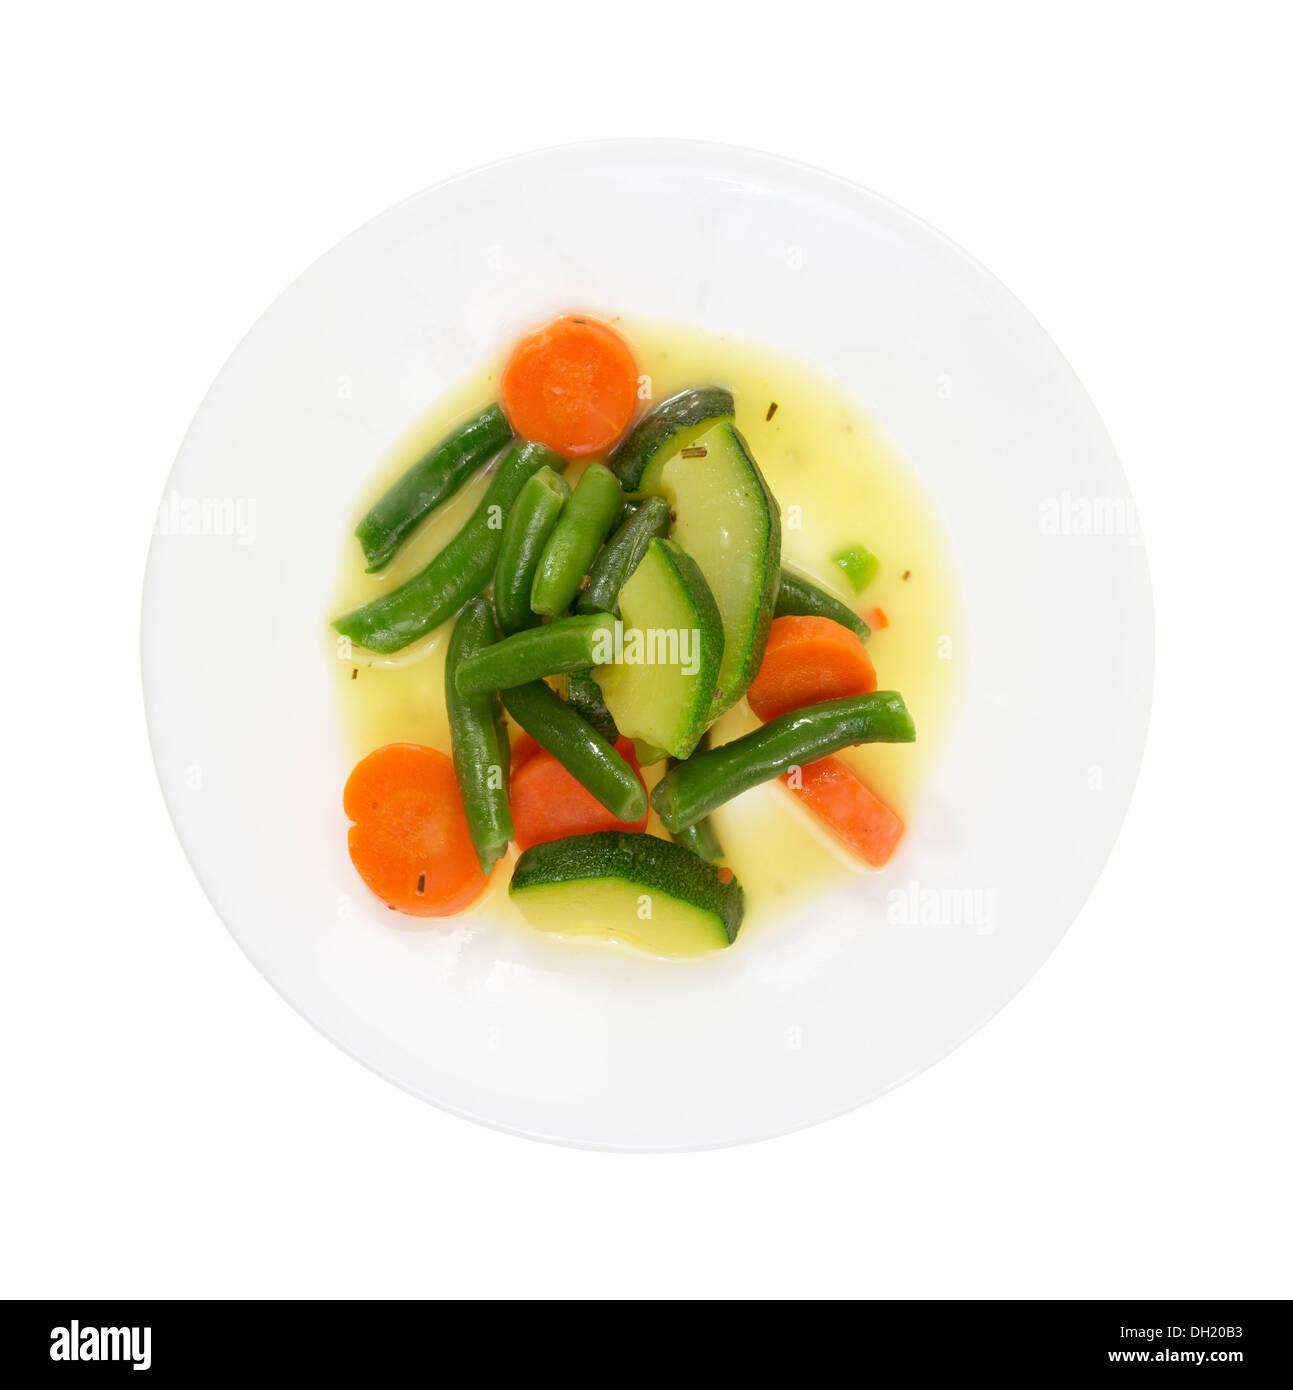 Vista dall'alto di un piatto cucinato con zucchine, carote e fagioli verdi in una salsa di burro su uno sfondo bianco. Foto Stock